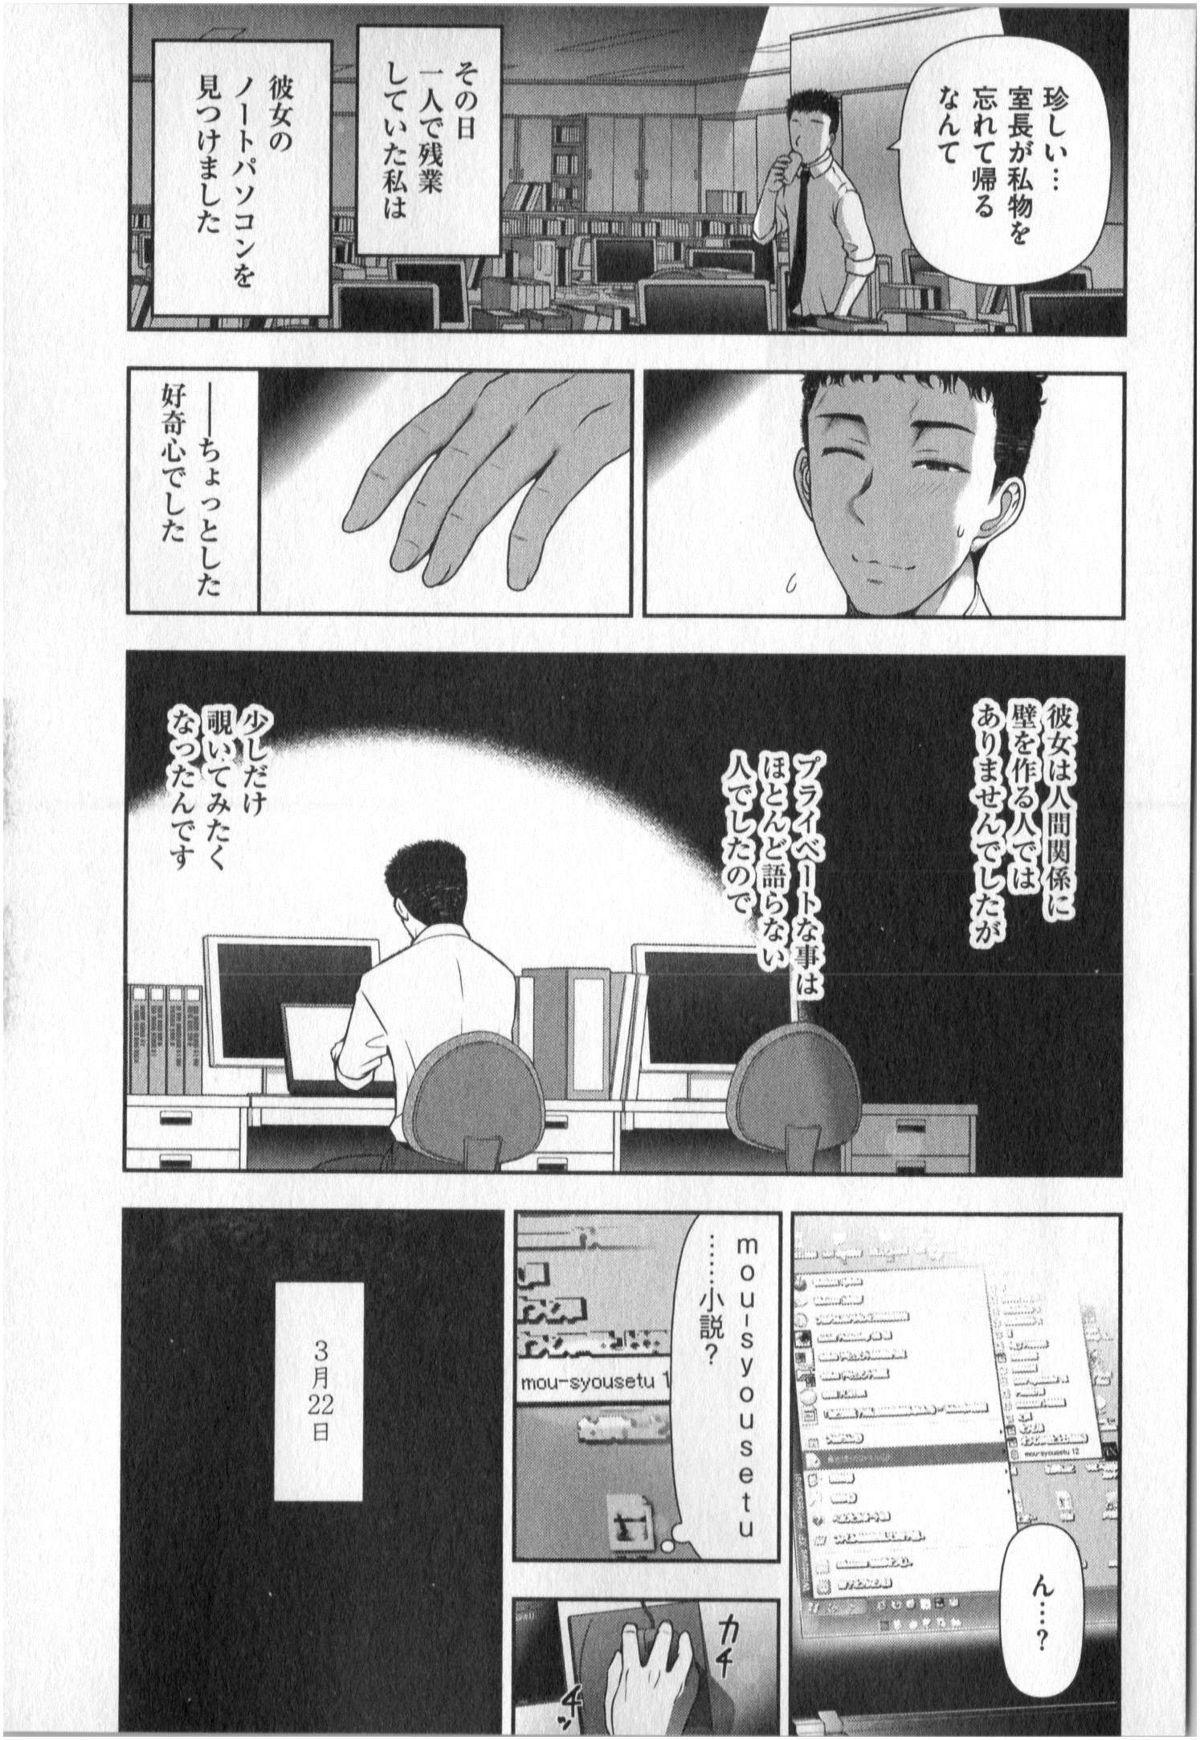 Yonimo Ecchi na Toshidensetsu vol. 01 129